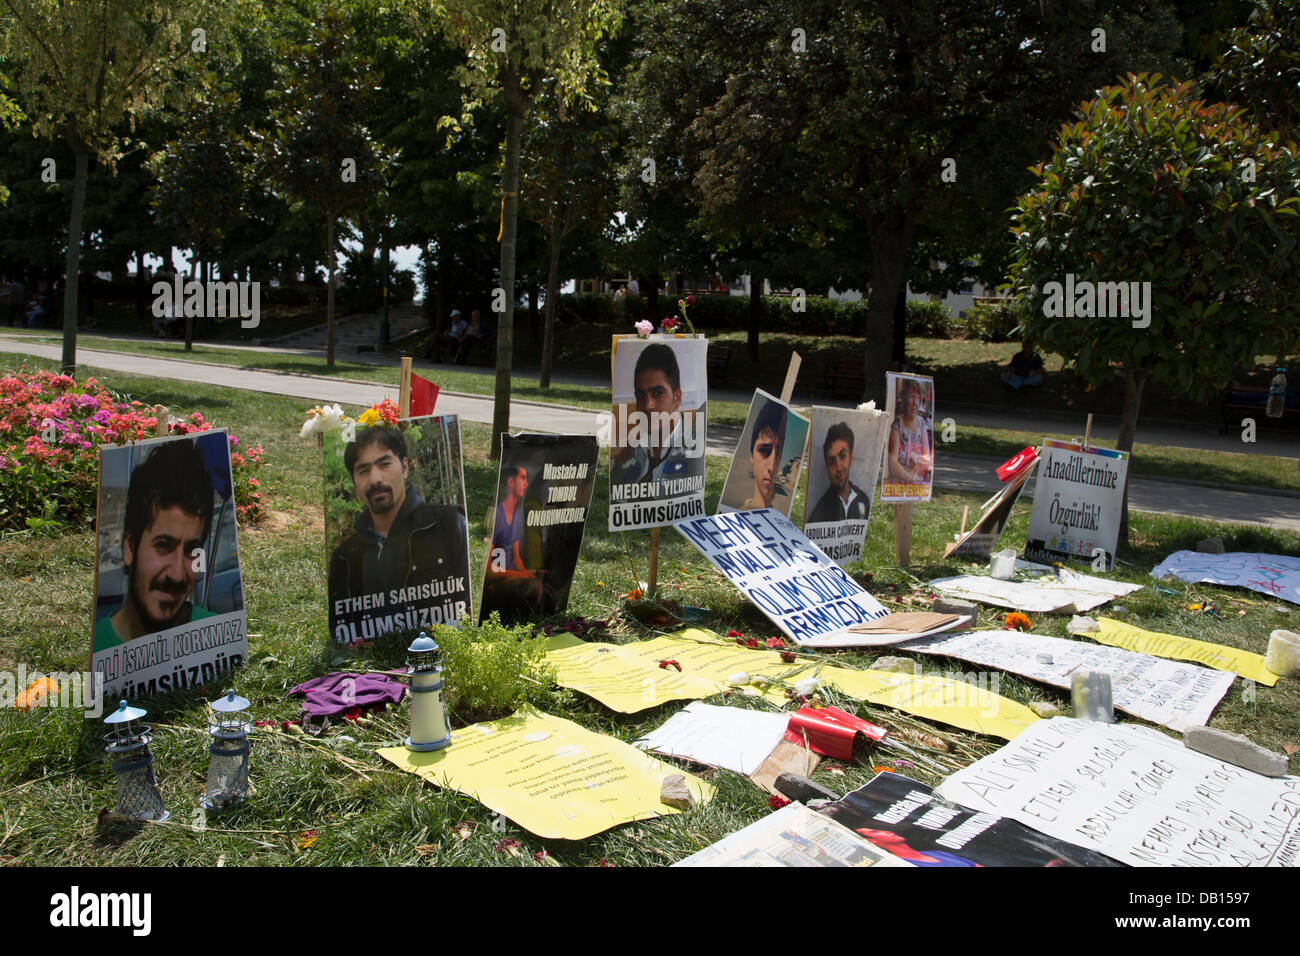 Gezi Park, Istanbul, Turchia -- Foto del 5 giovani morti durante le proteste a livello nazionale per difendere l'ultimo spazio verde in Piazza Taksim, Gezi Park, è collocato nel centro del parco del popolo in ricordo. Foto di Bikem Ekberzade Foto Stock